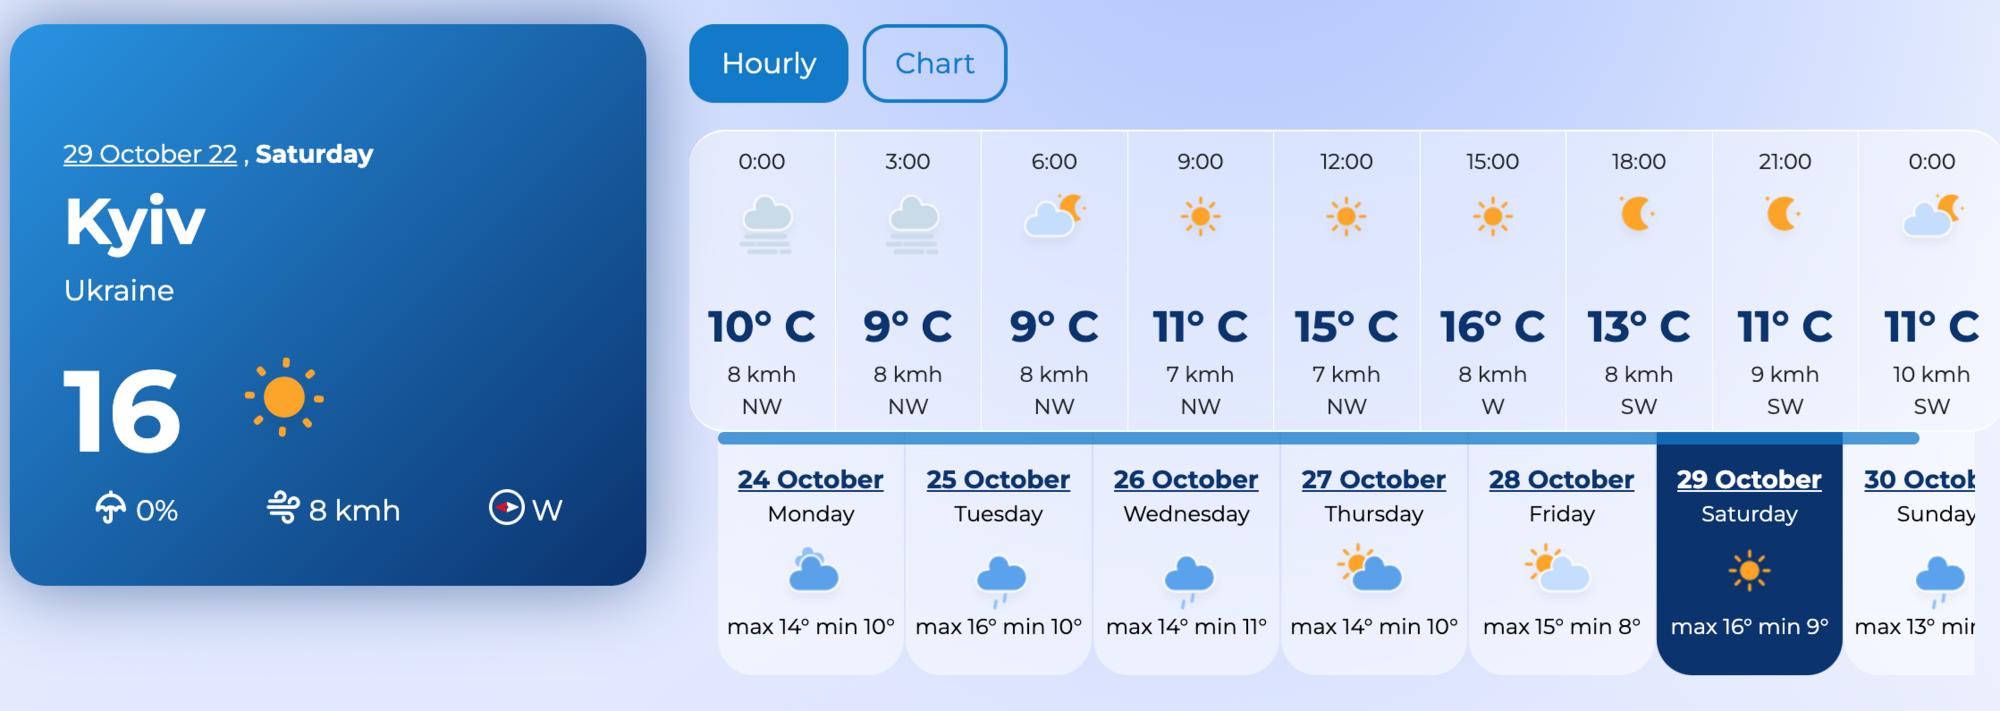 Погода в Києві 29 жовтня